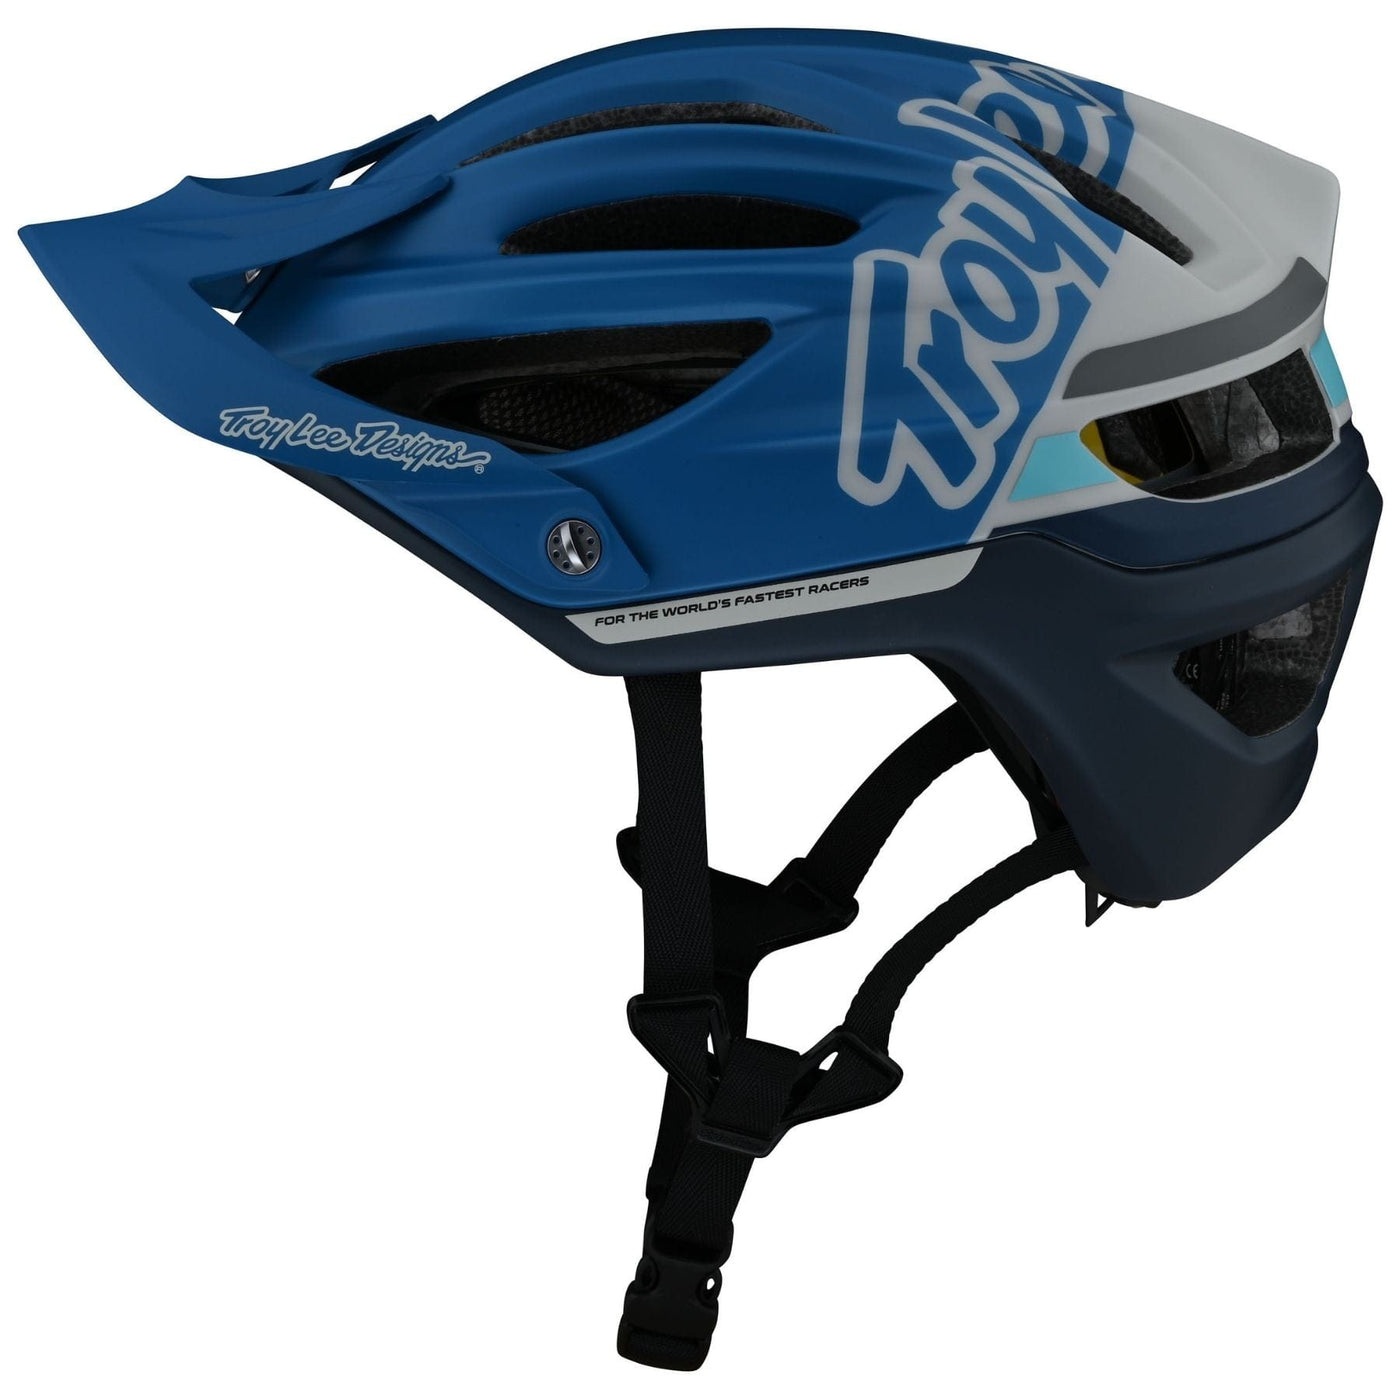 Troy Lee Designs A2 MIPS Helmet Silhouette - Blue